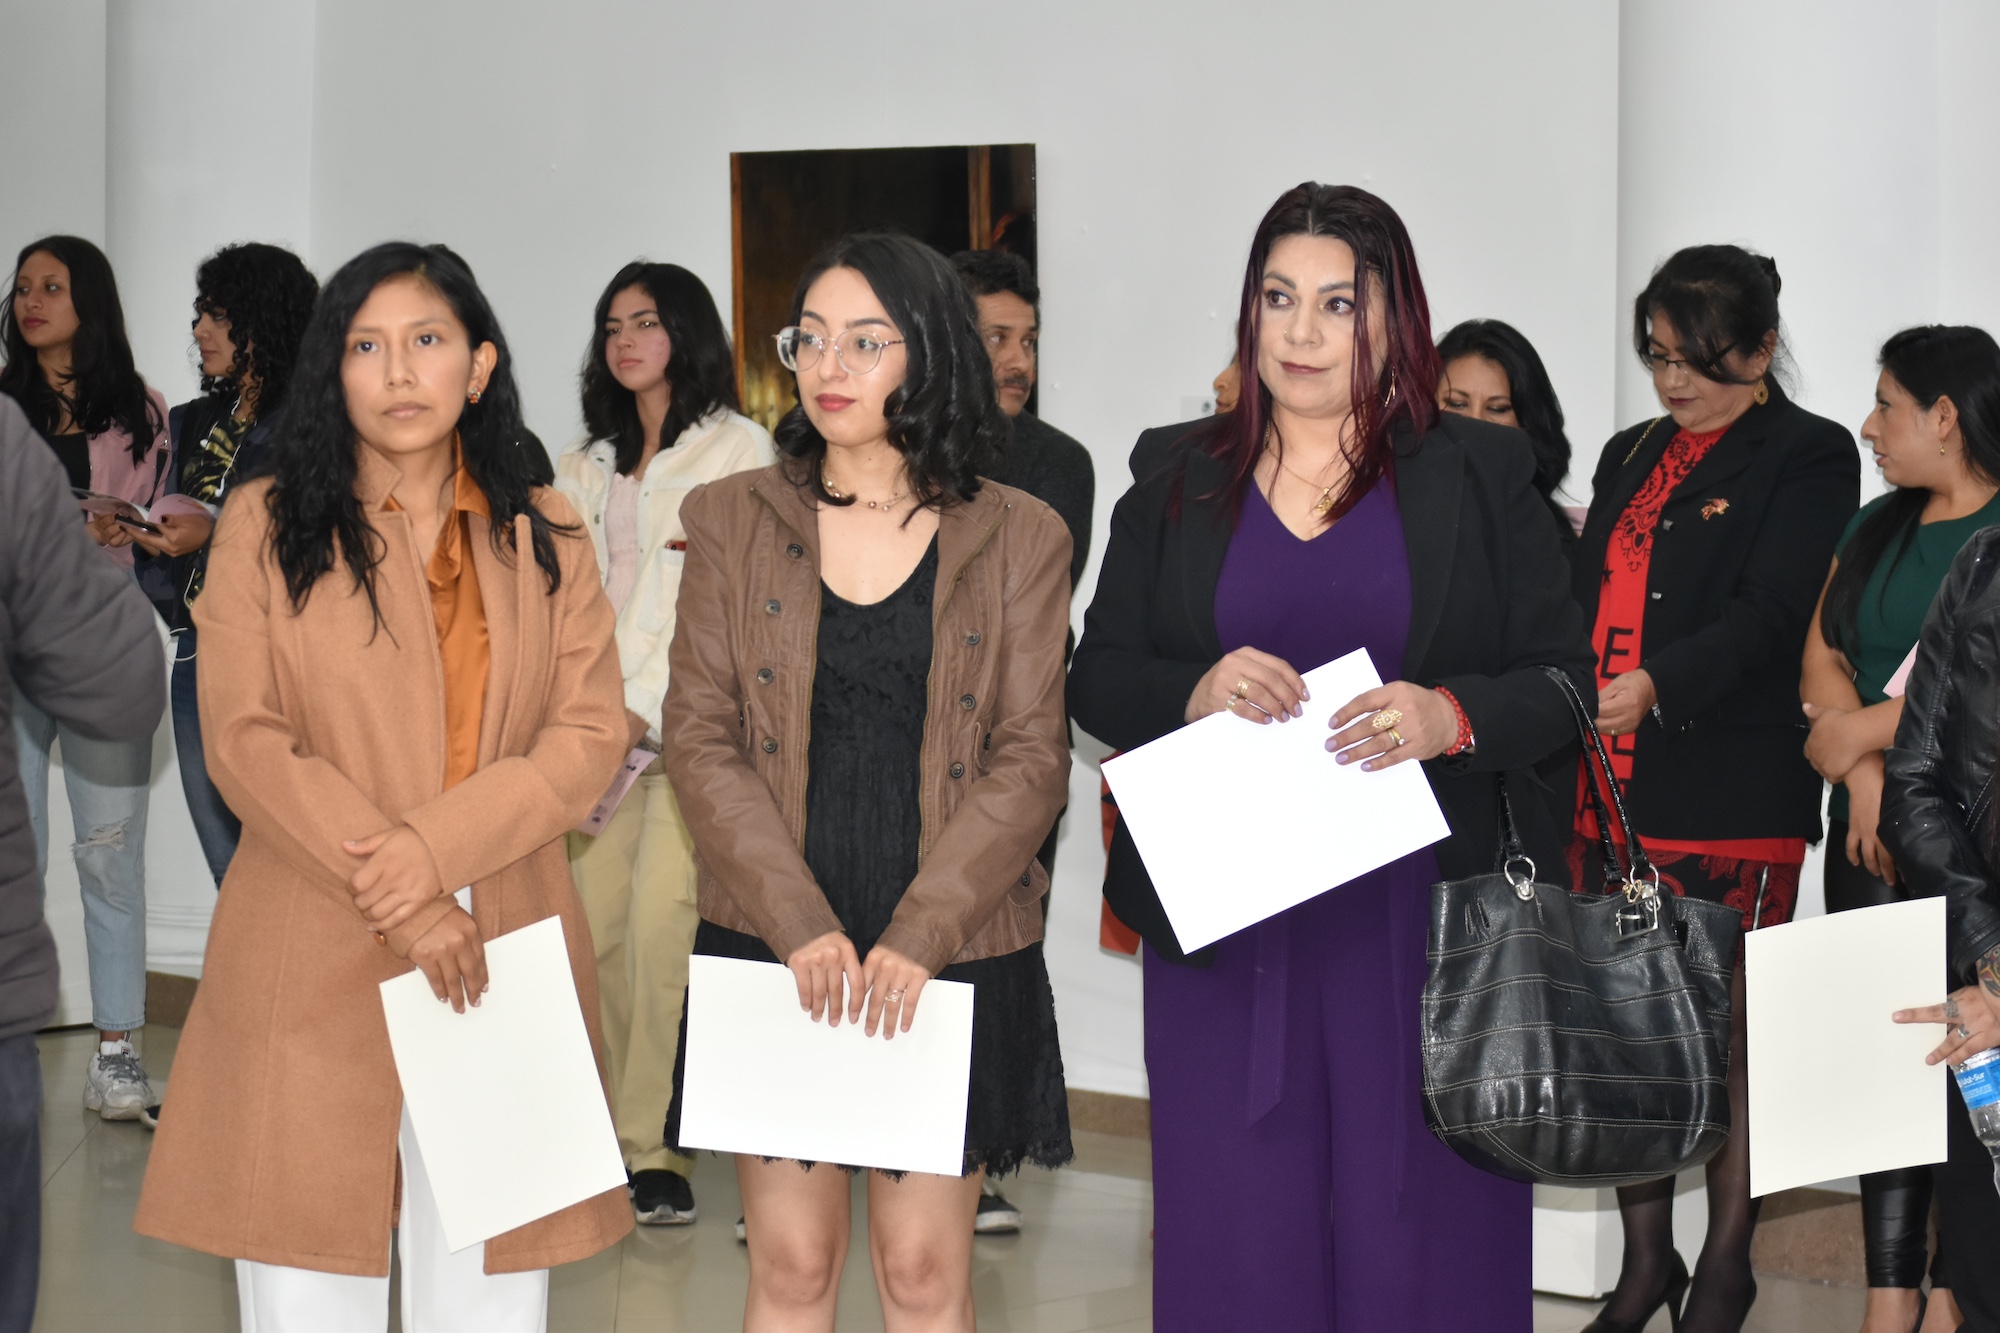 14 mujeres brillan en la exposición "Matilde Hoy"